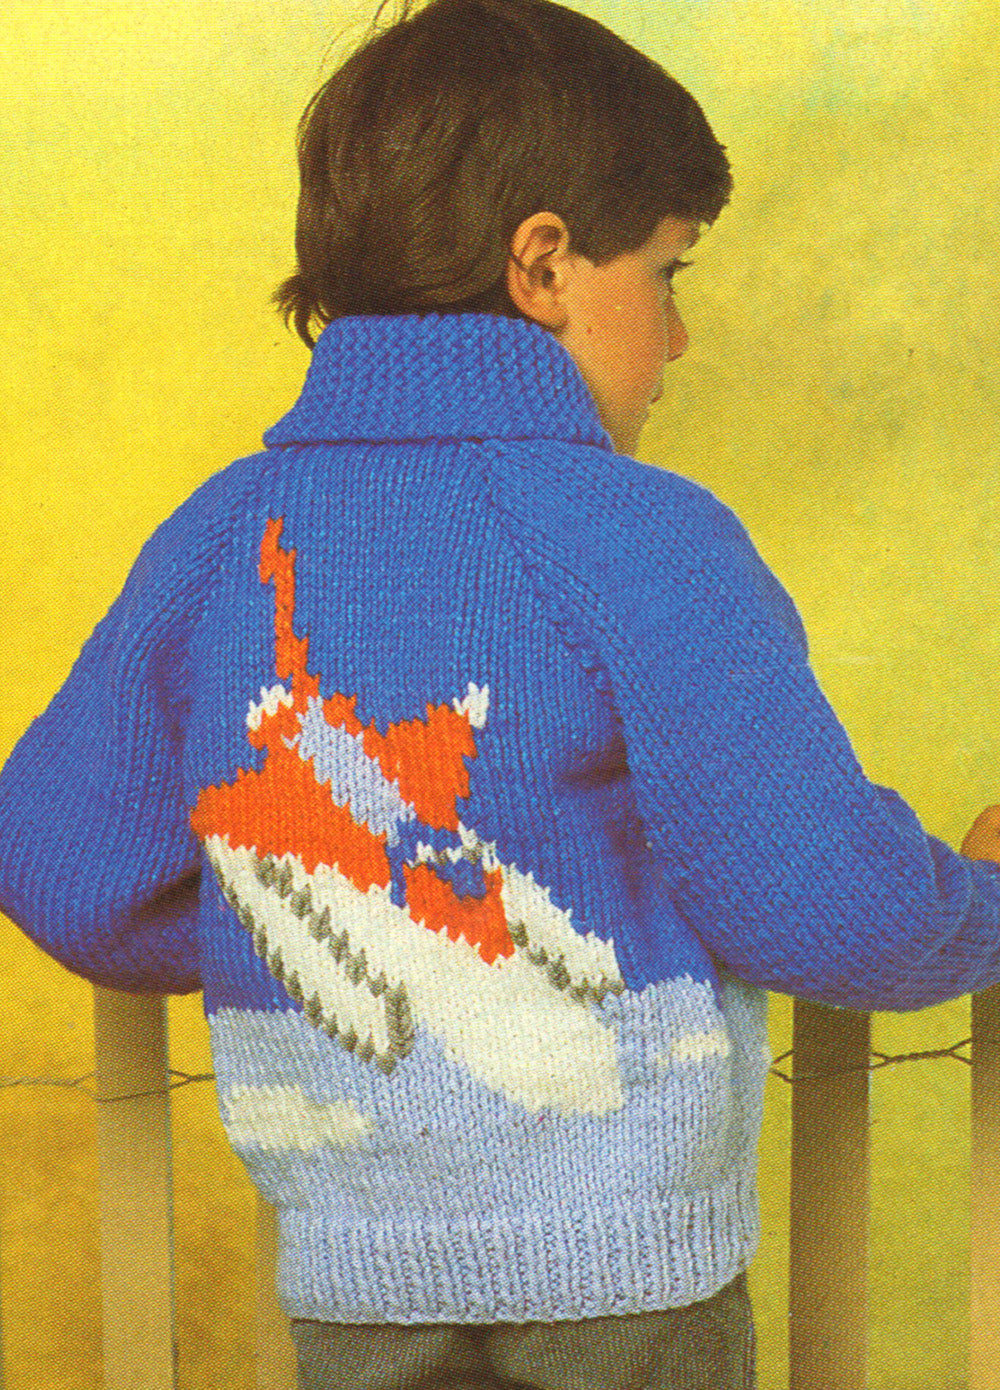 Space Shuttle Sweater Pattern